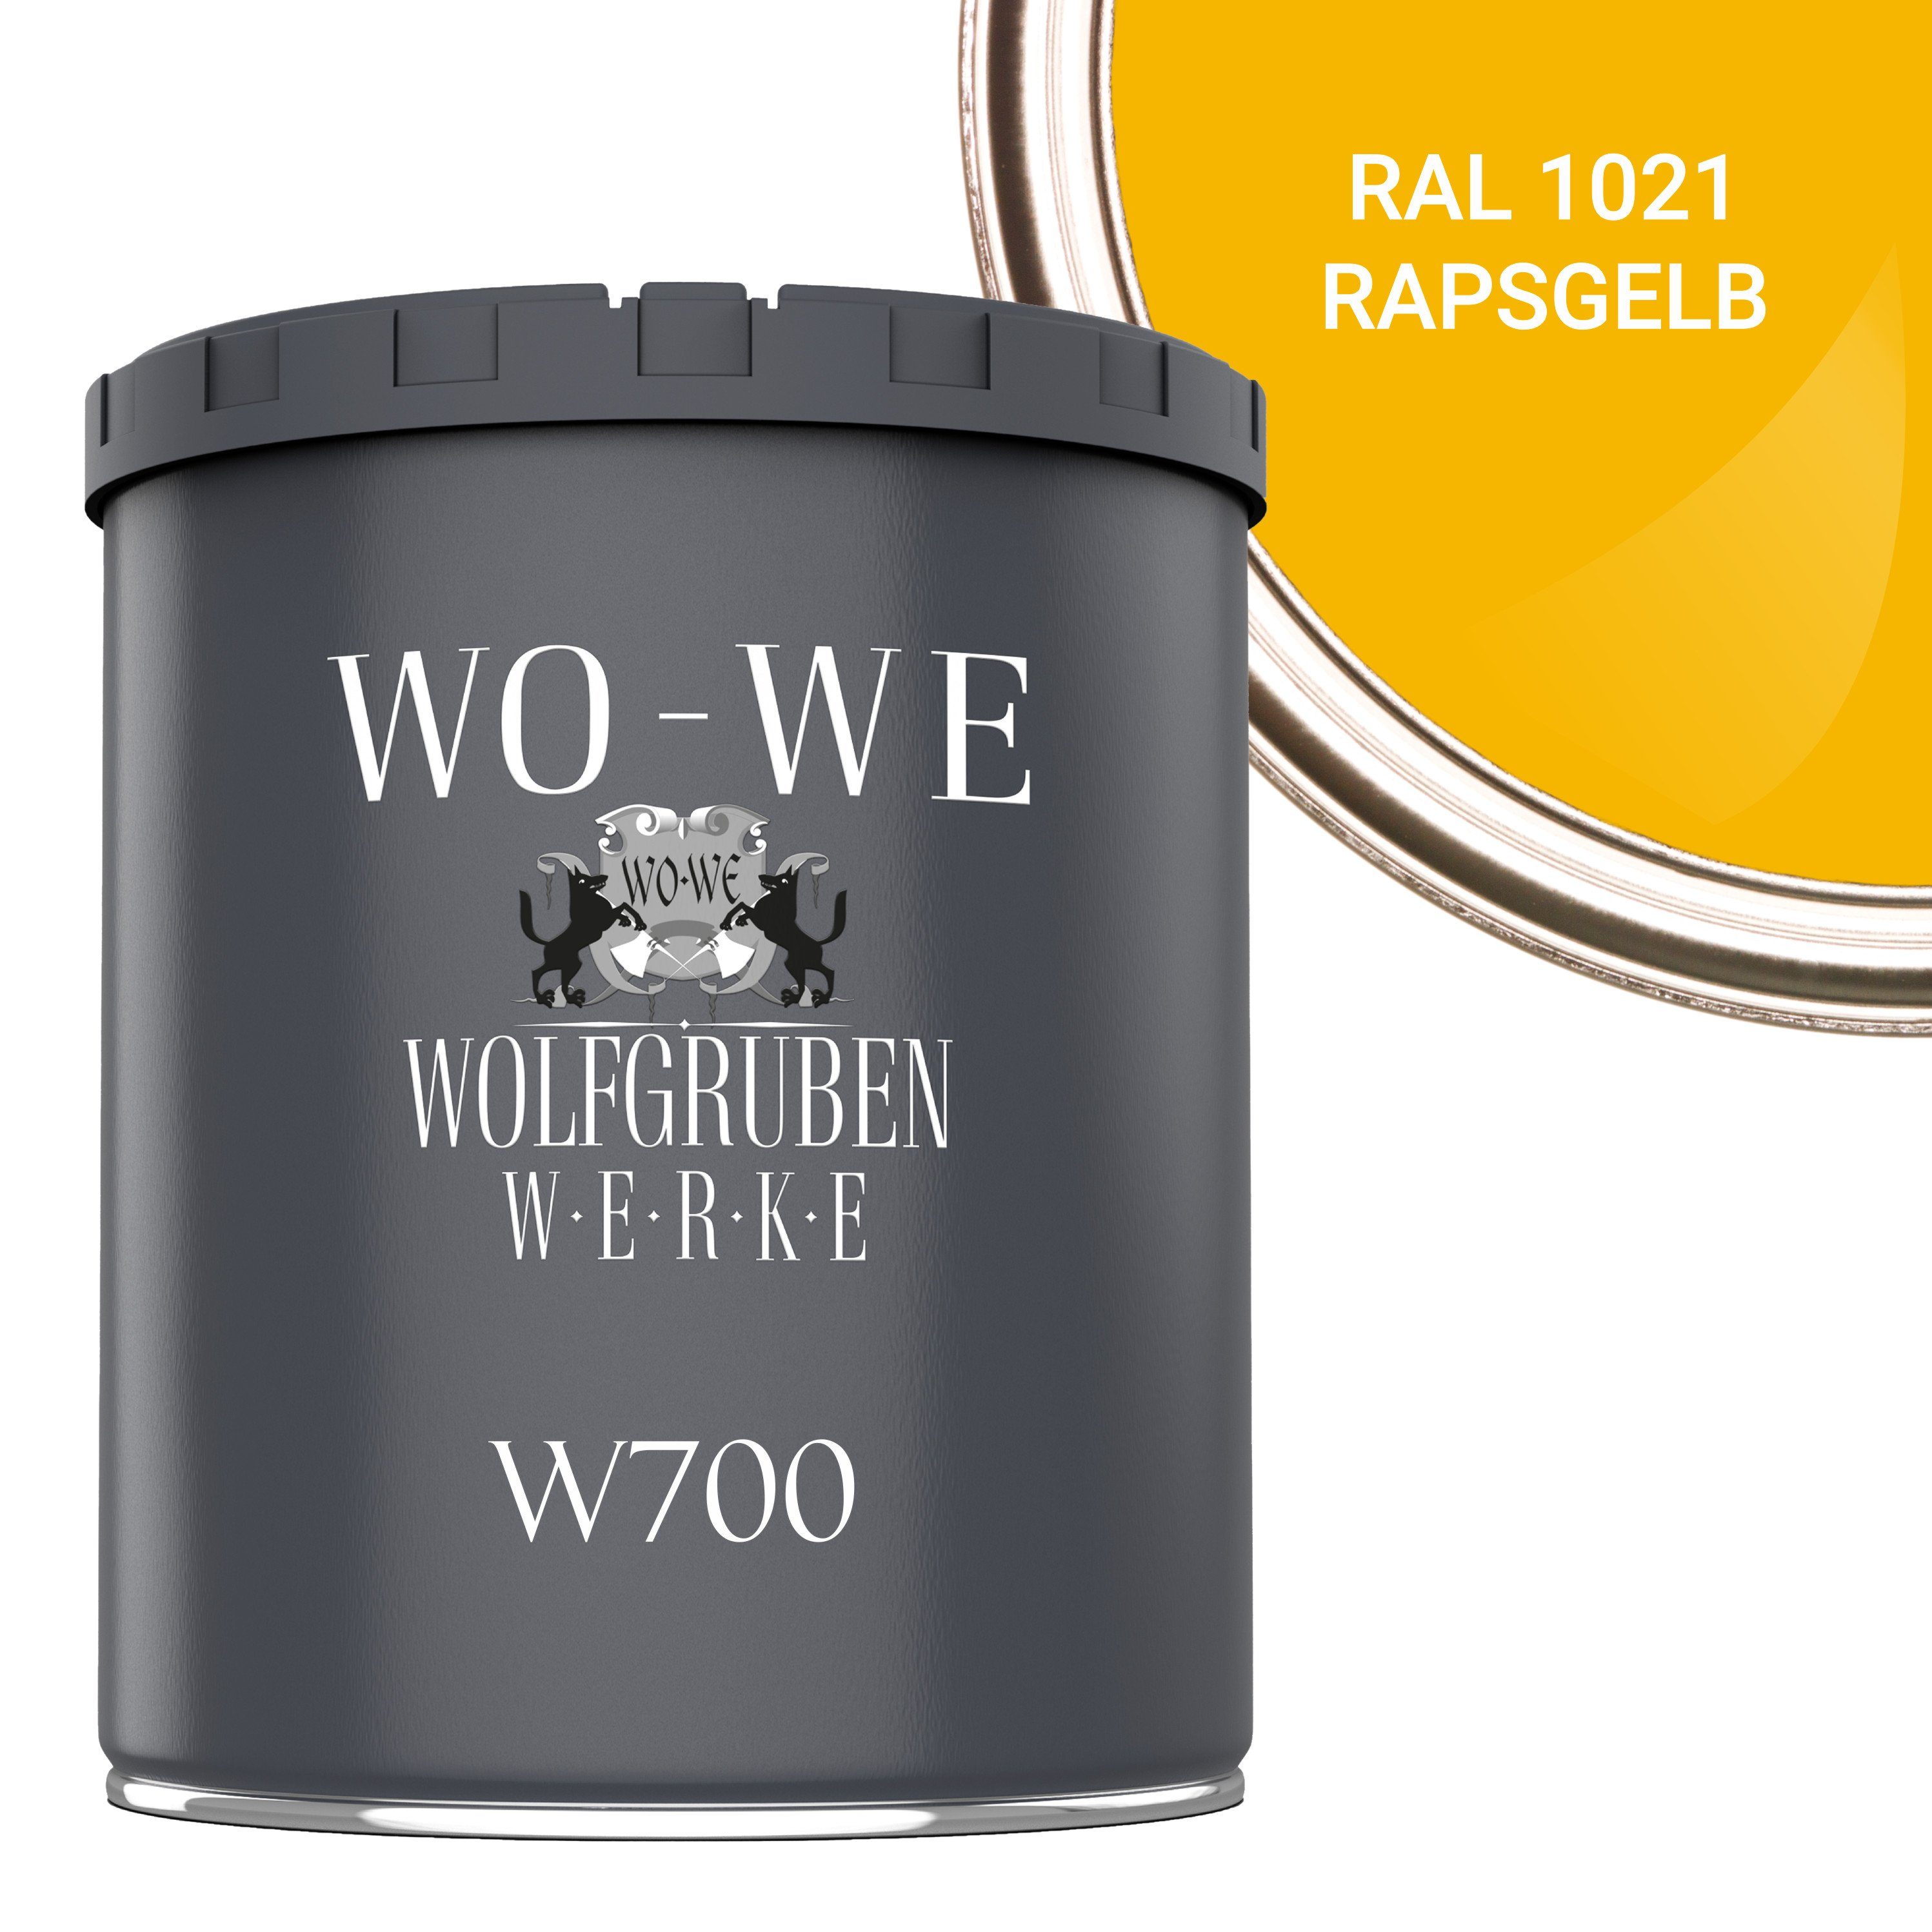 WO-WE Bodenversiegelung Betonfarbe Bodenfarbe Bodenbeschichtung W700, 1-10L, Seidenglänzend RAL 1021 Rapsgelb